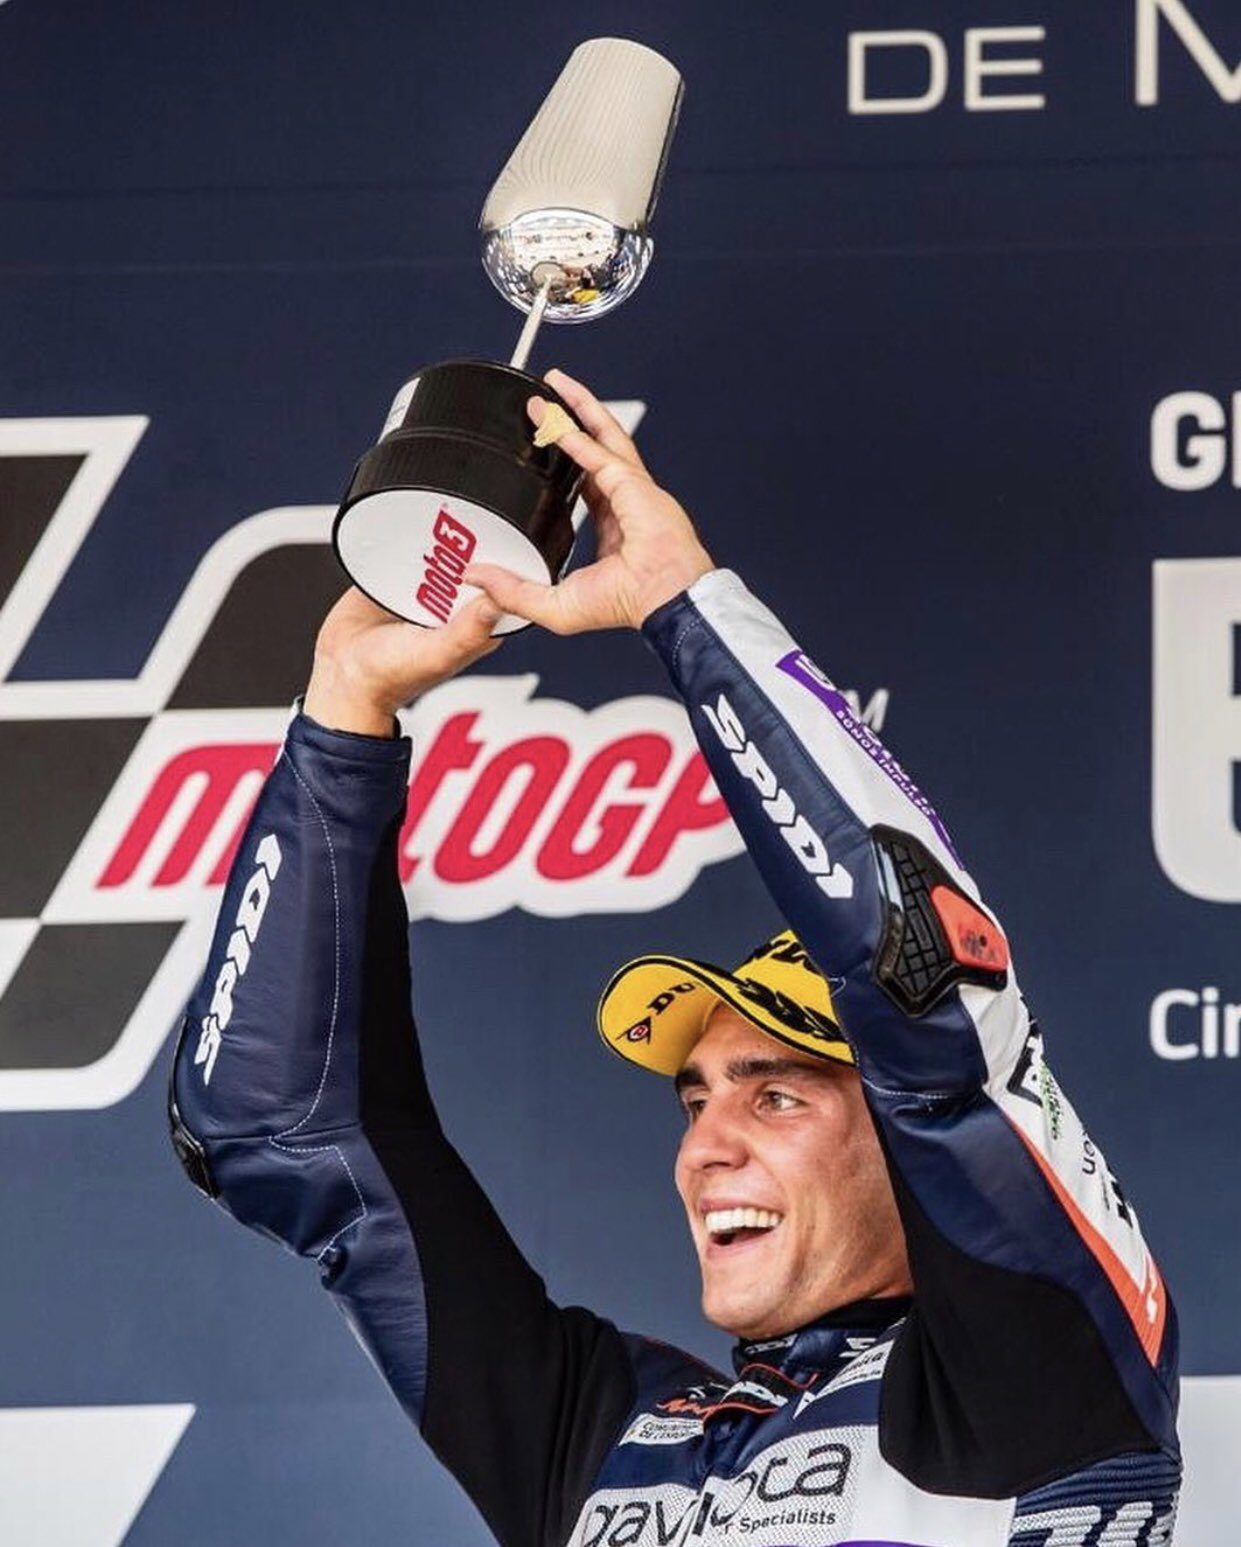 piloto Albert Arenas comemora vitória no GP da Espanha